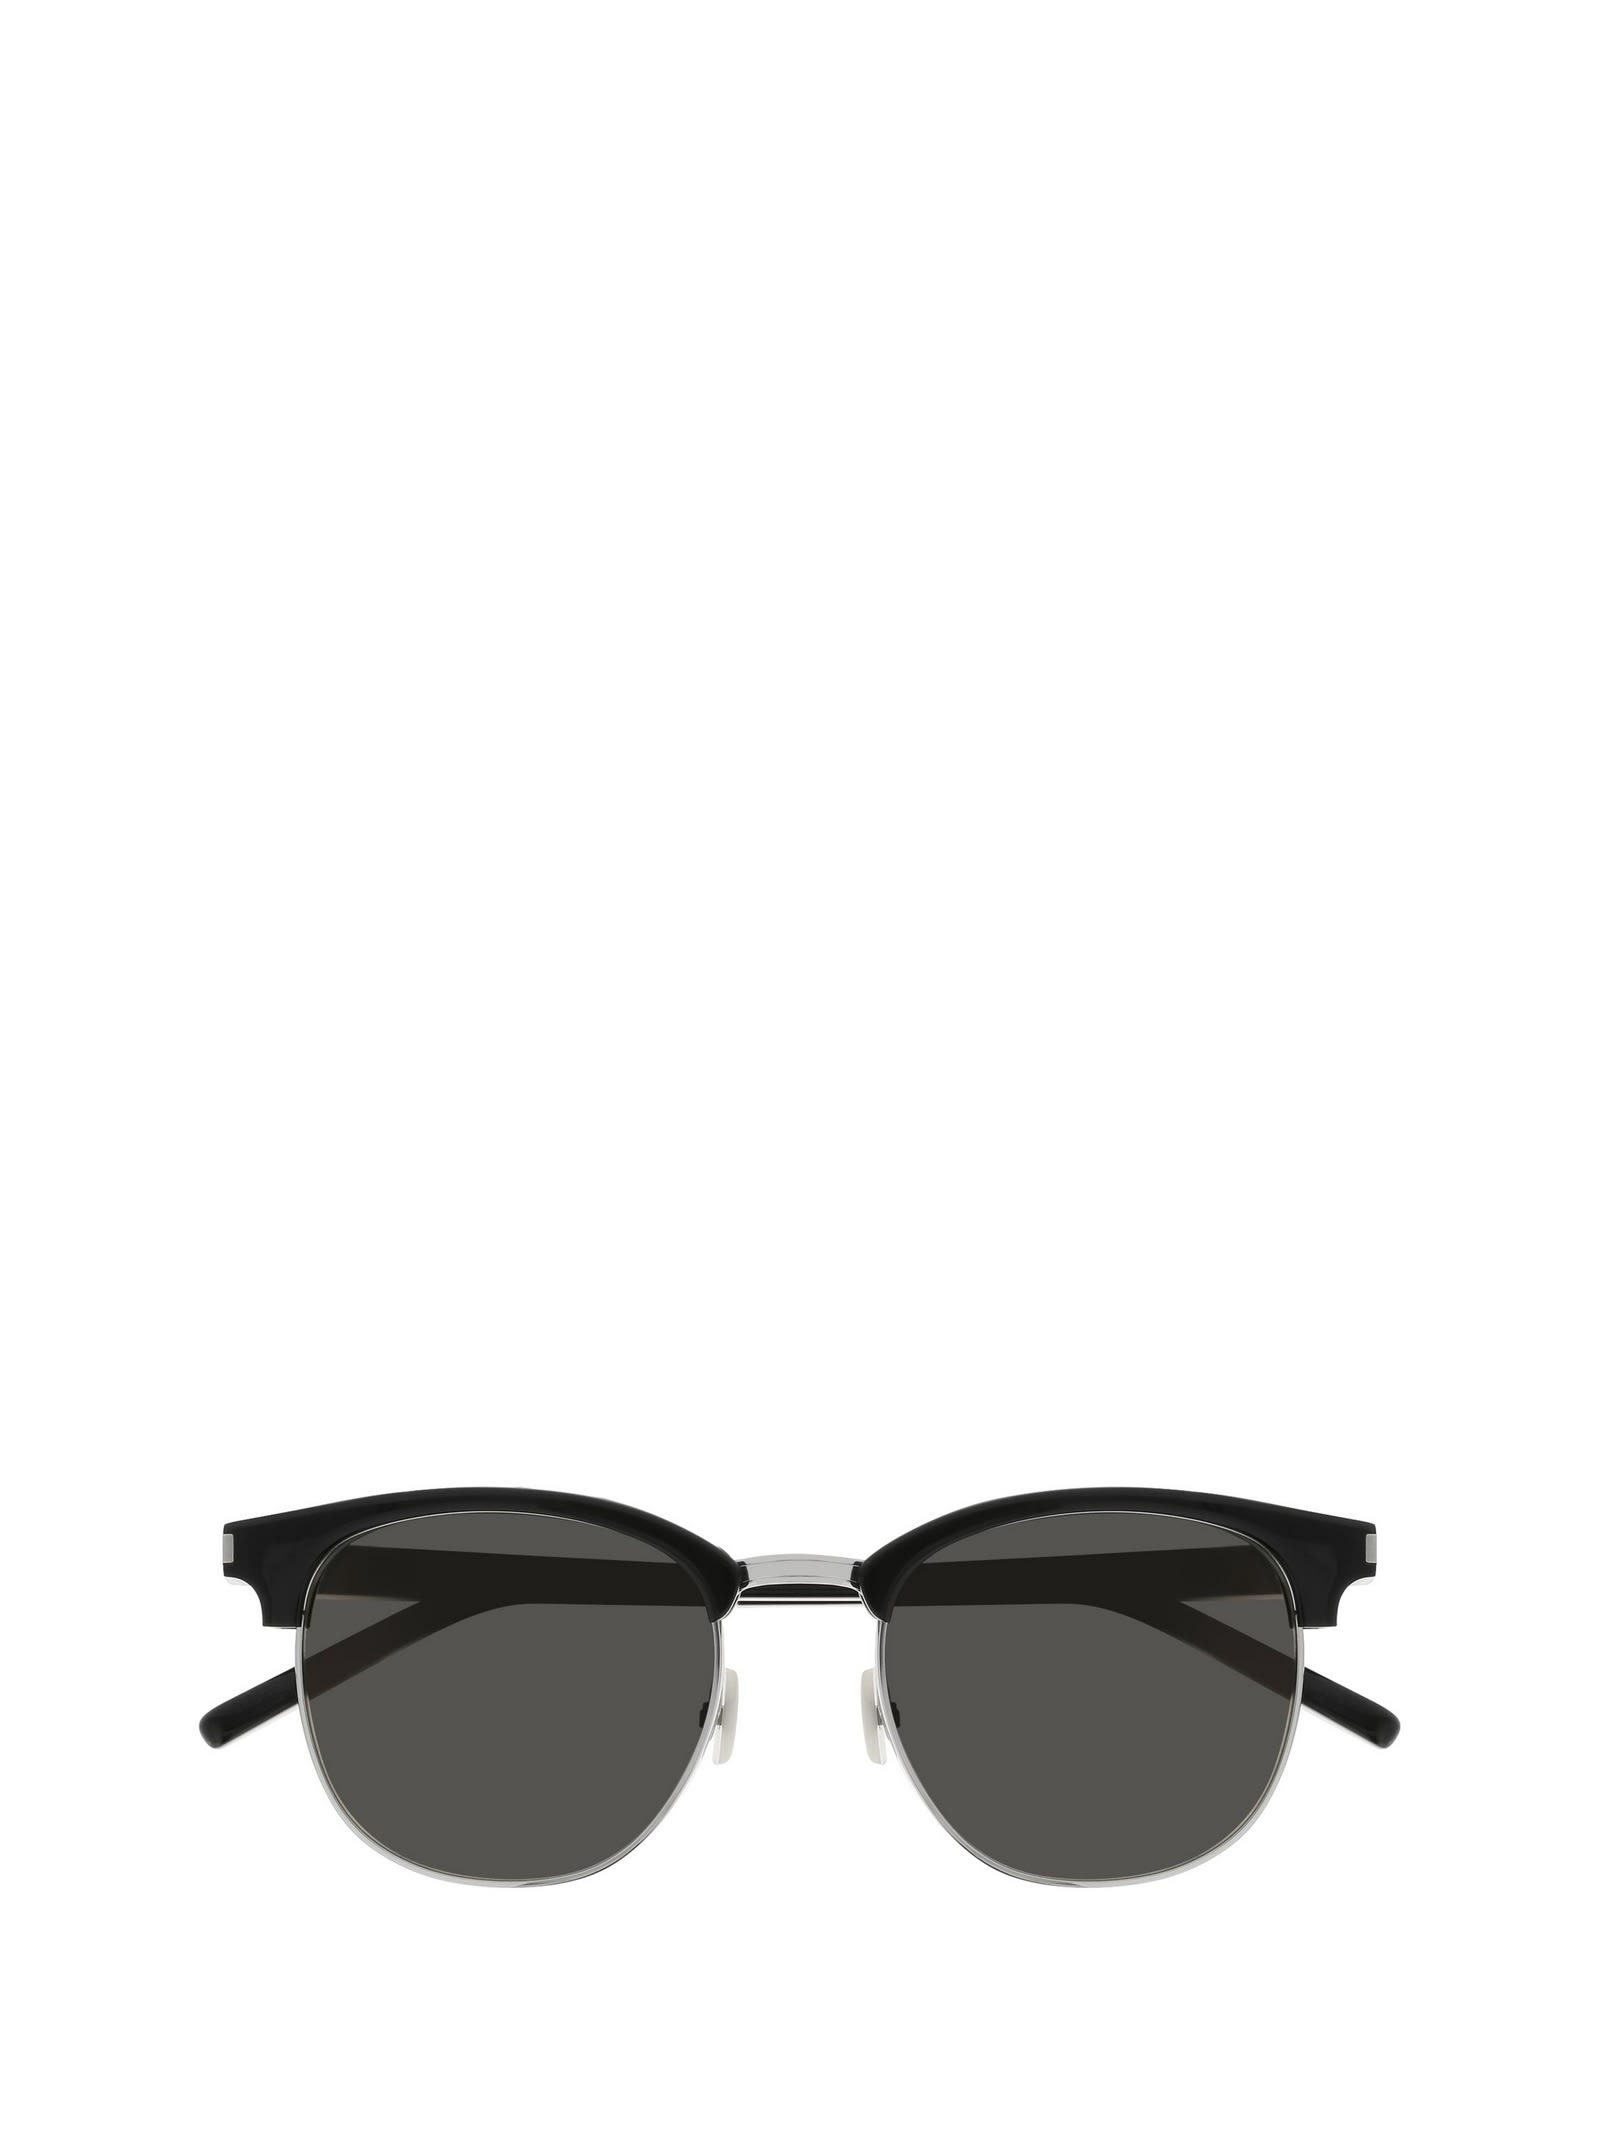 Saint Laurent Eyewear Sl 108 Black Sunglasses